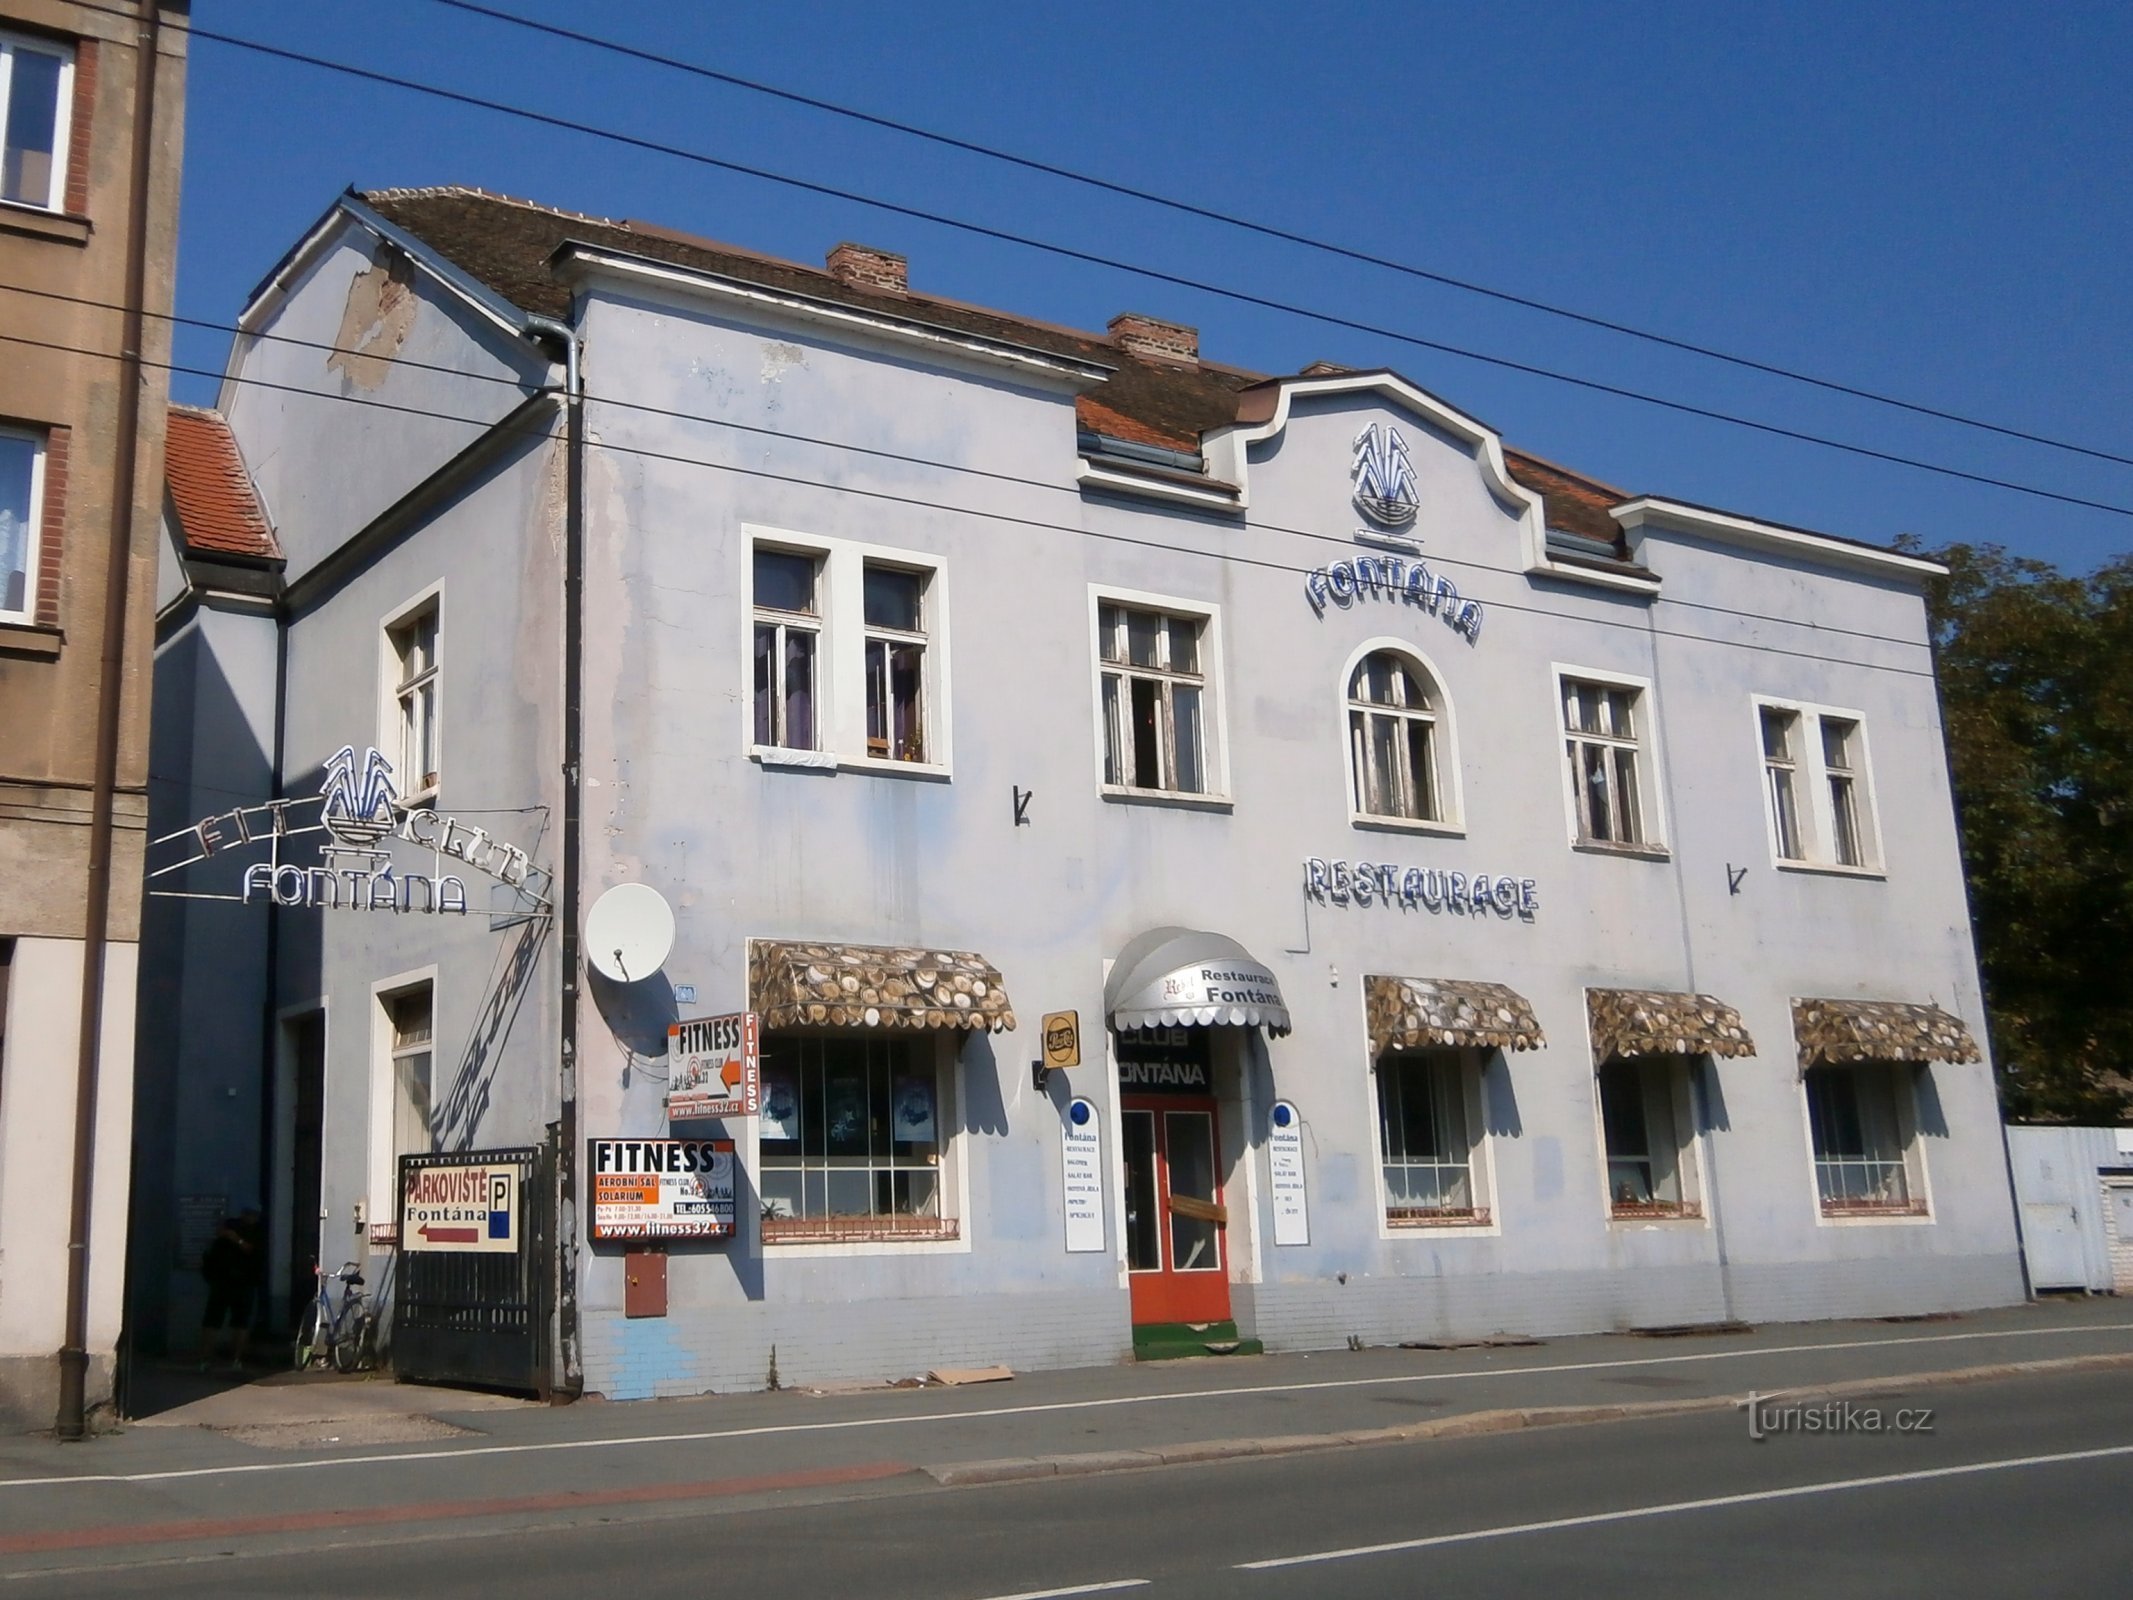 Restaurant Fontána (Hradec Králové, 17.9.2014/XNUMX/XNUMX)